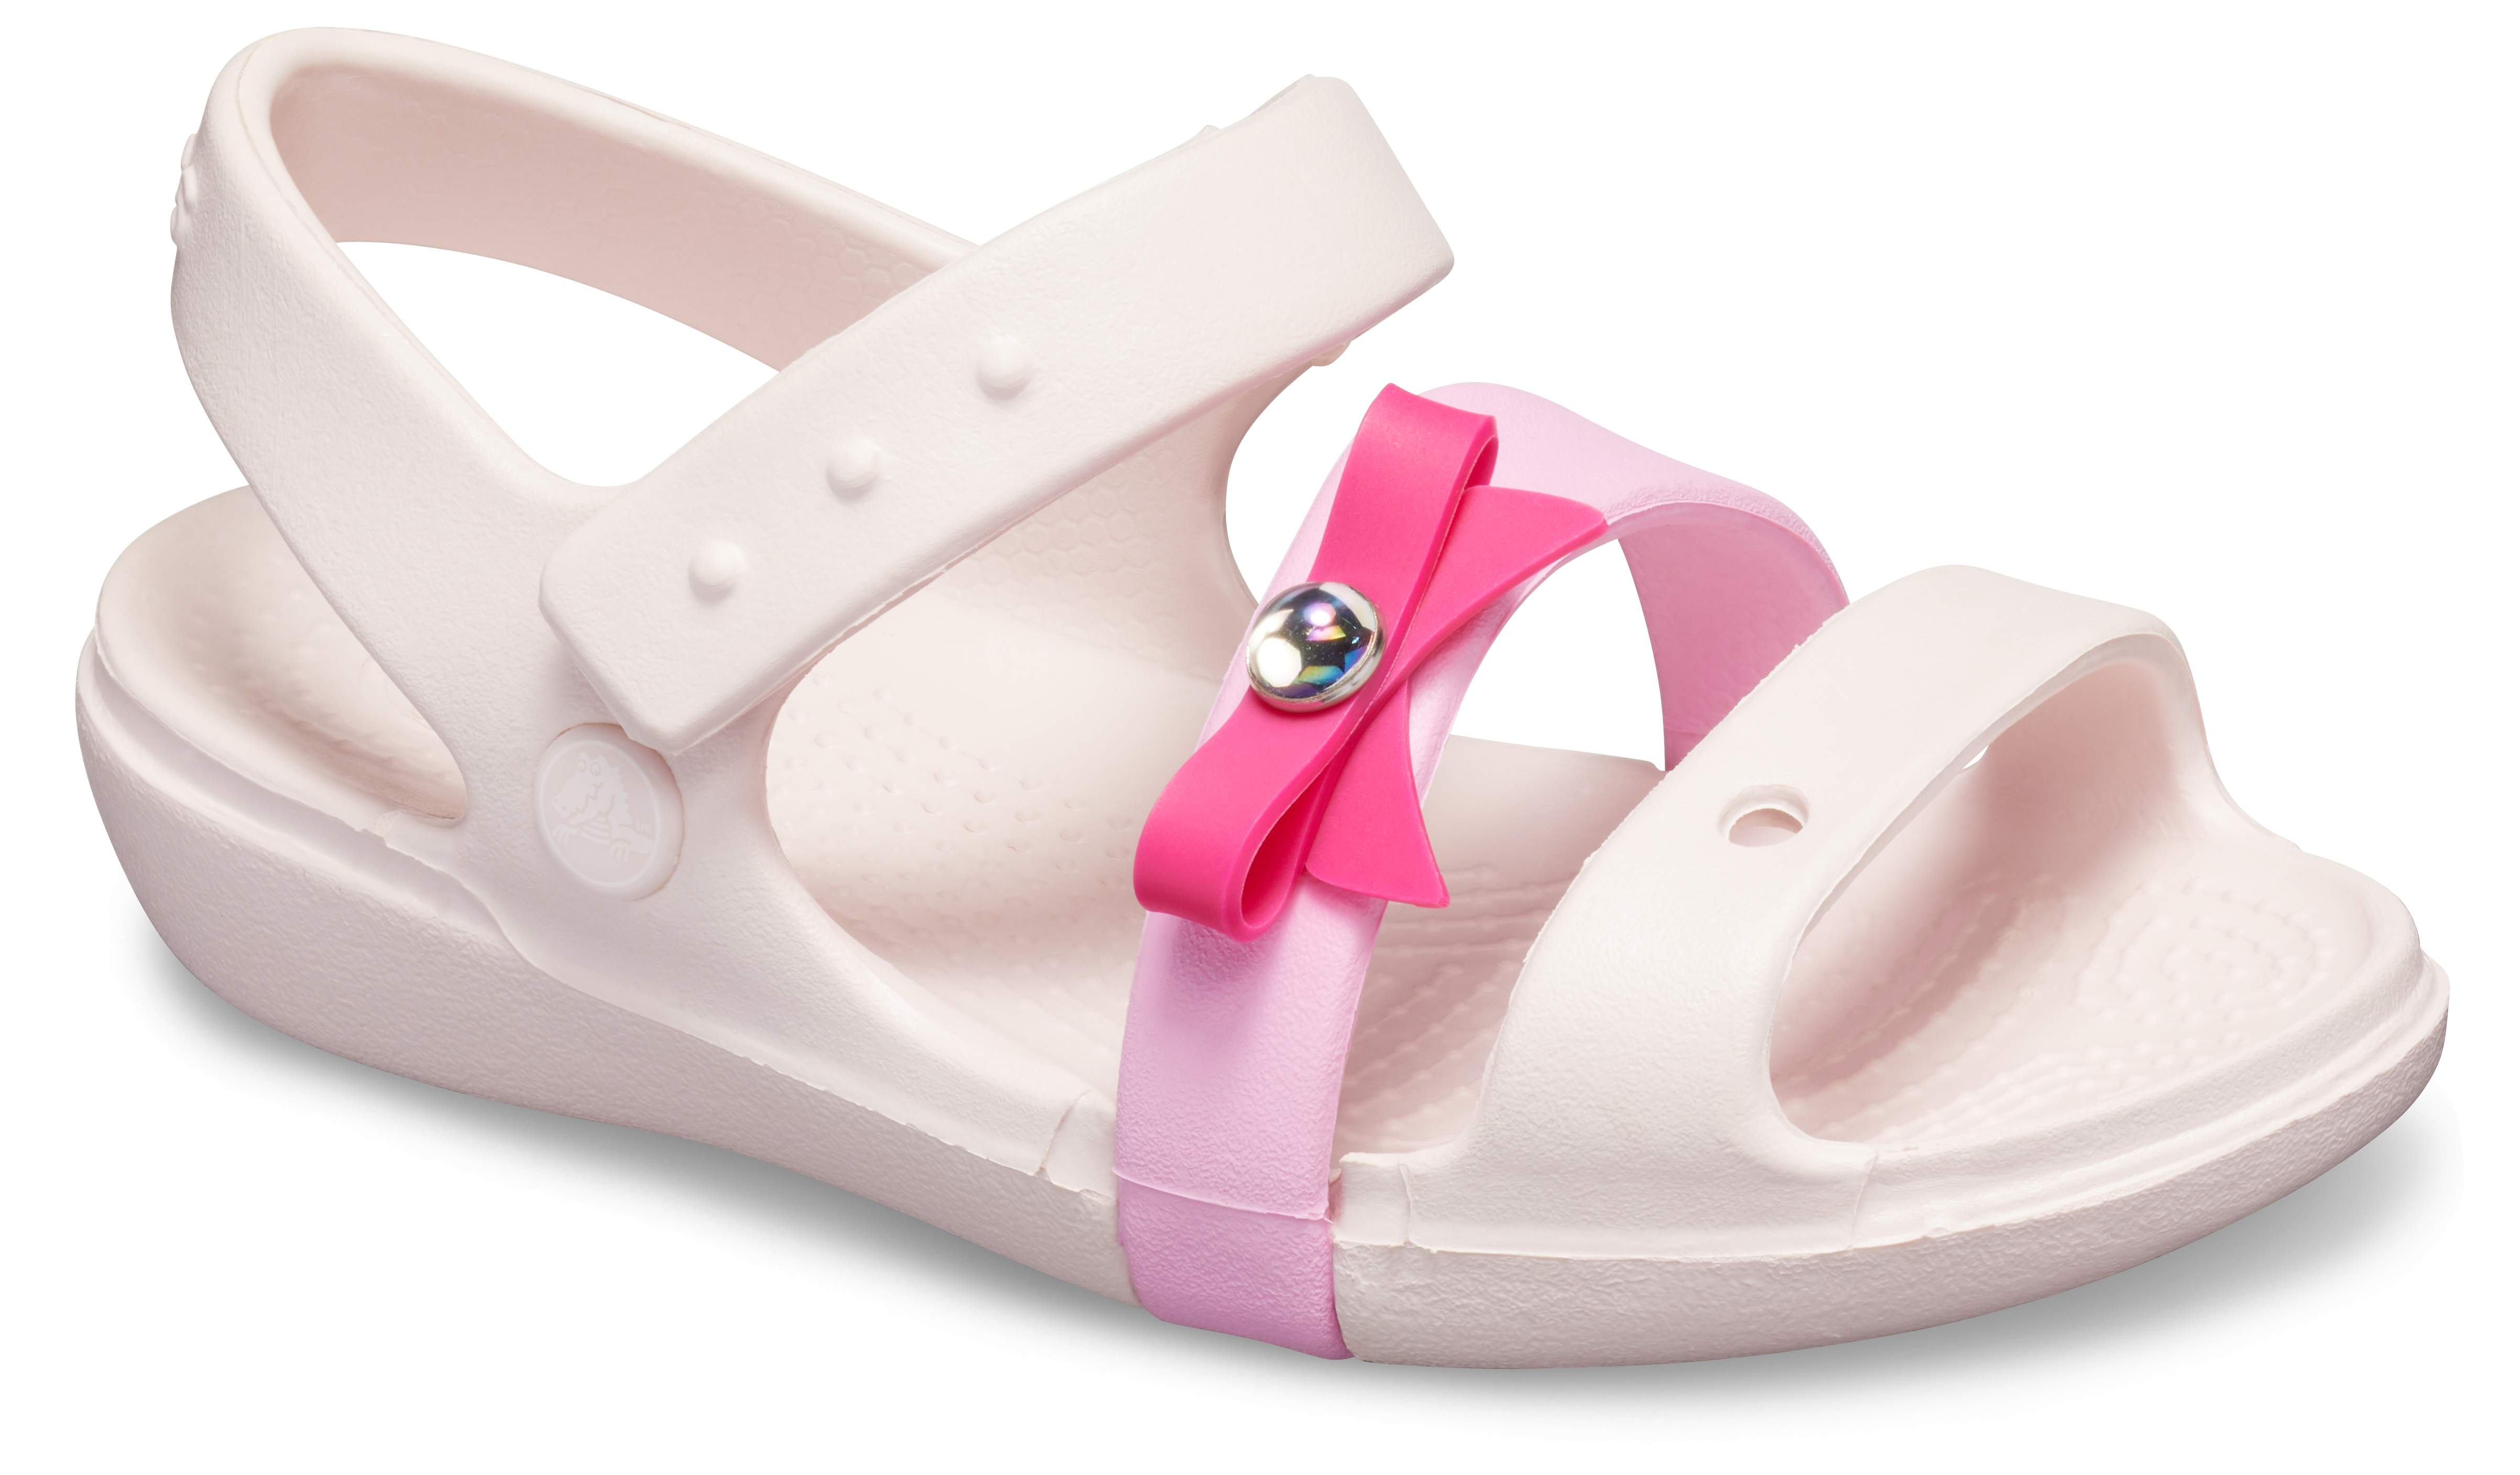 crocs pink sandals